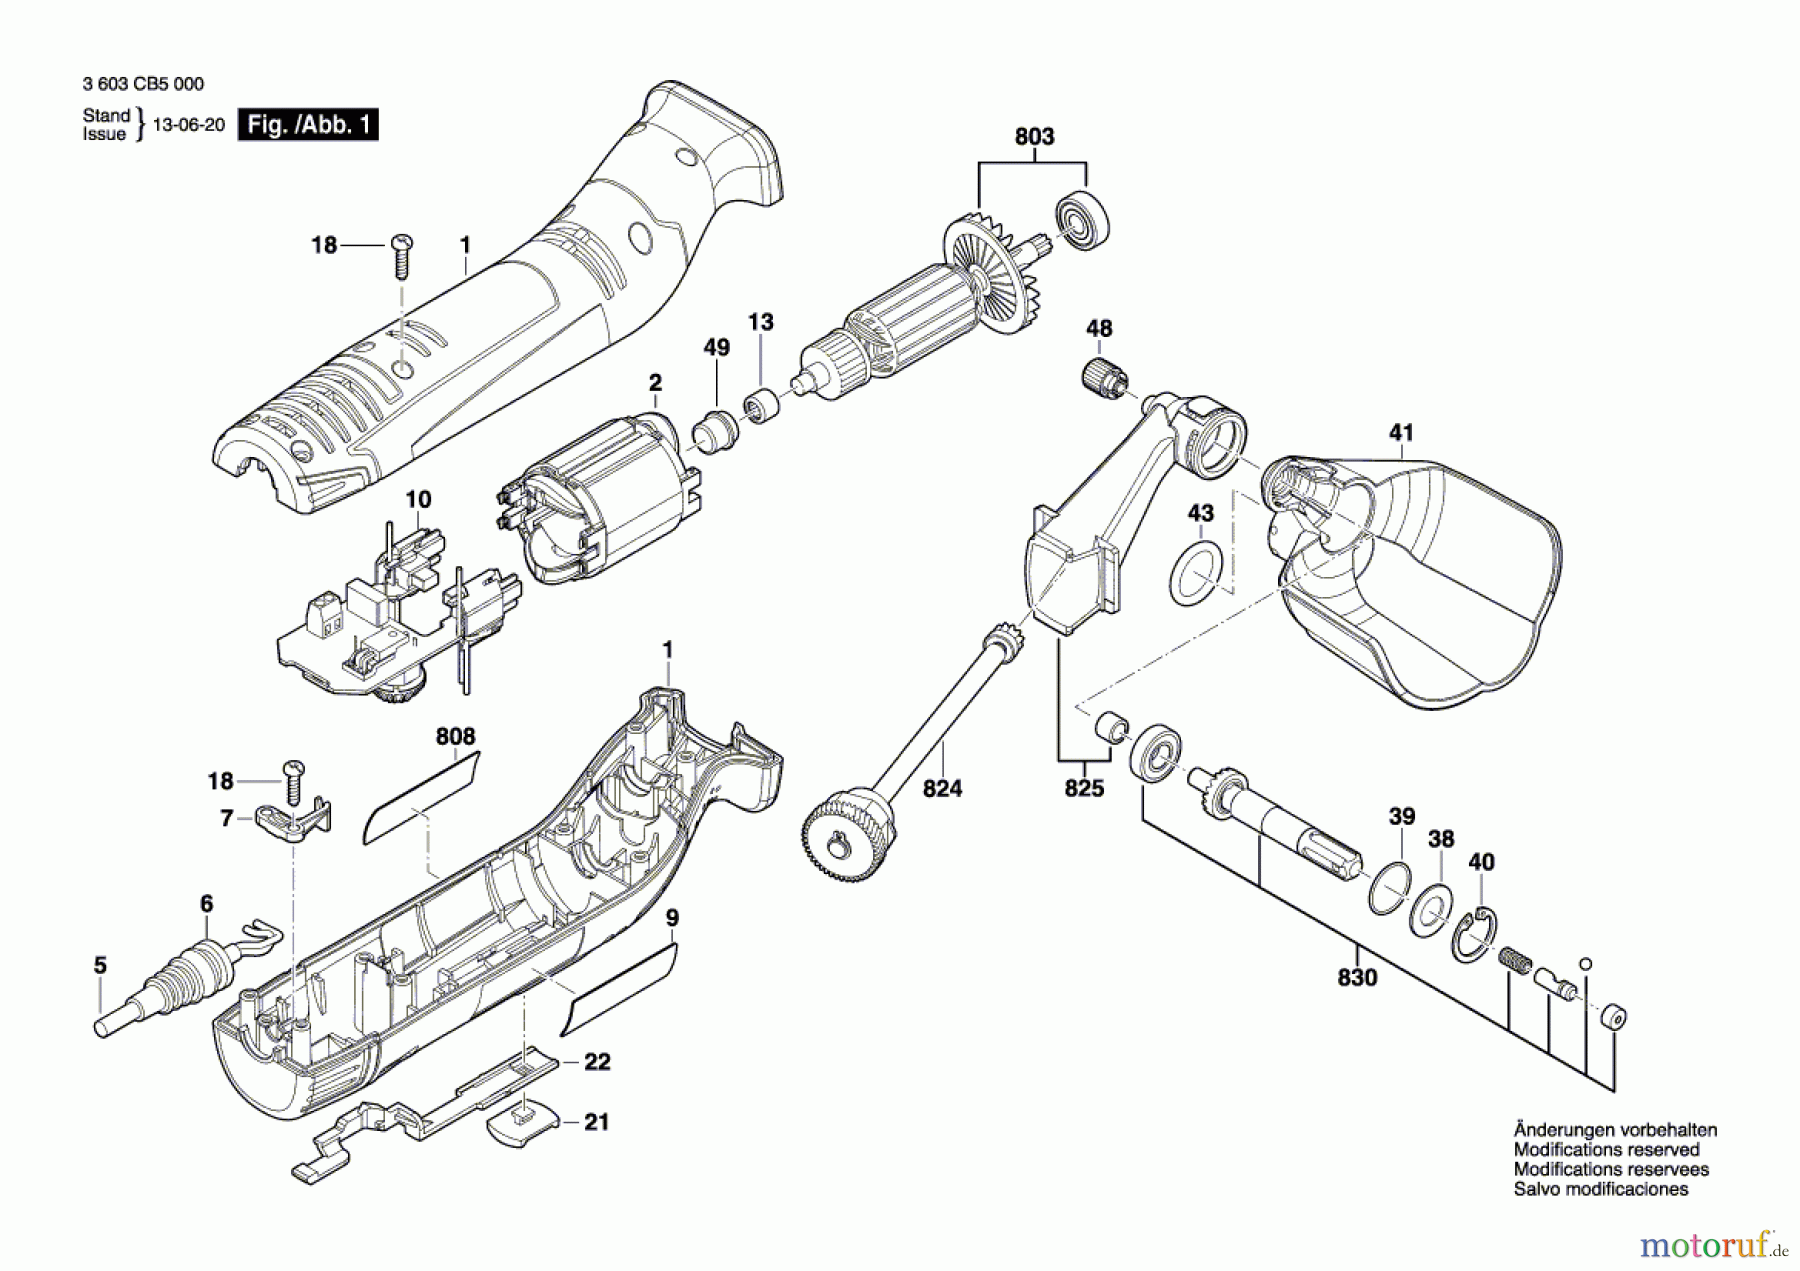  Bosch Werkzeug Schleifrolle PRR 250 ES Seite 1